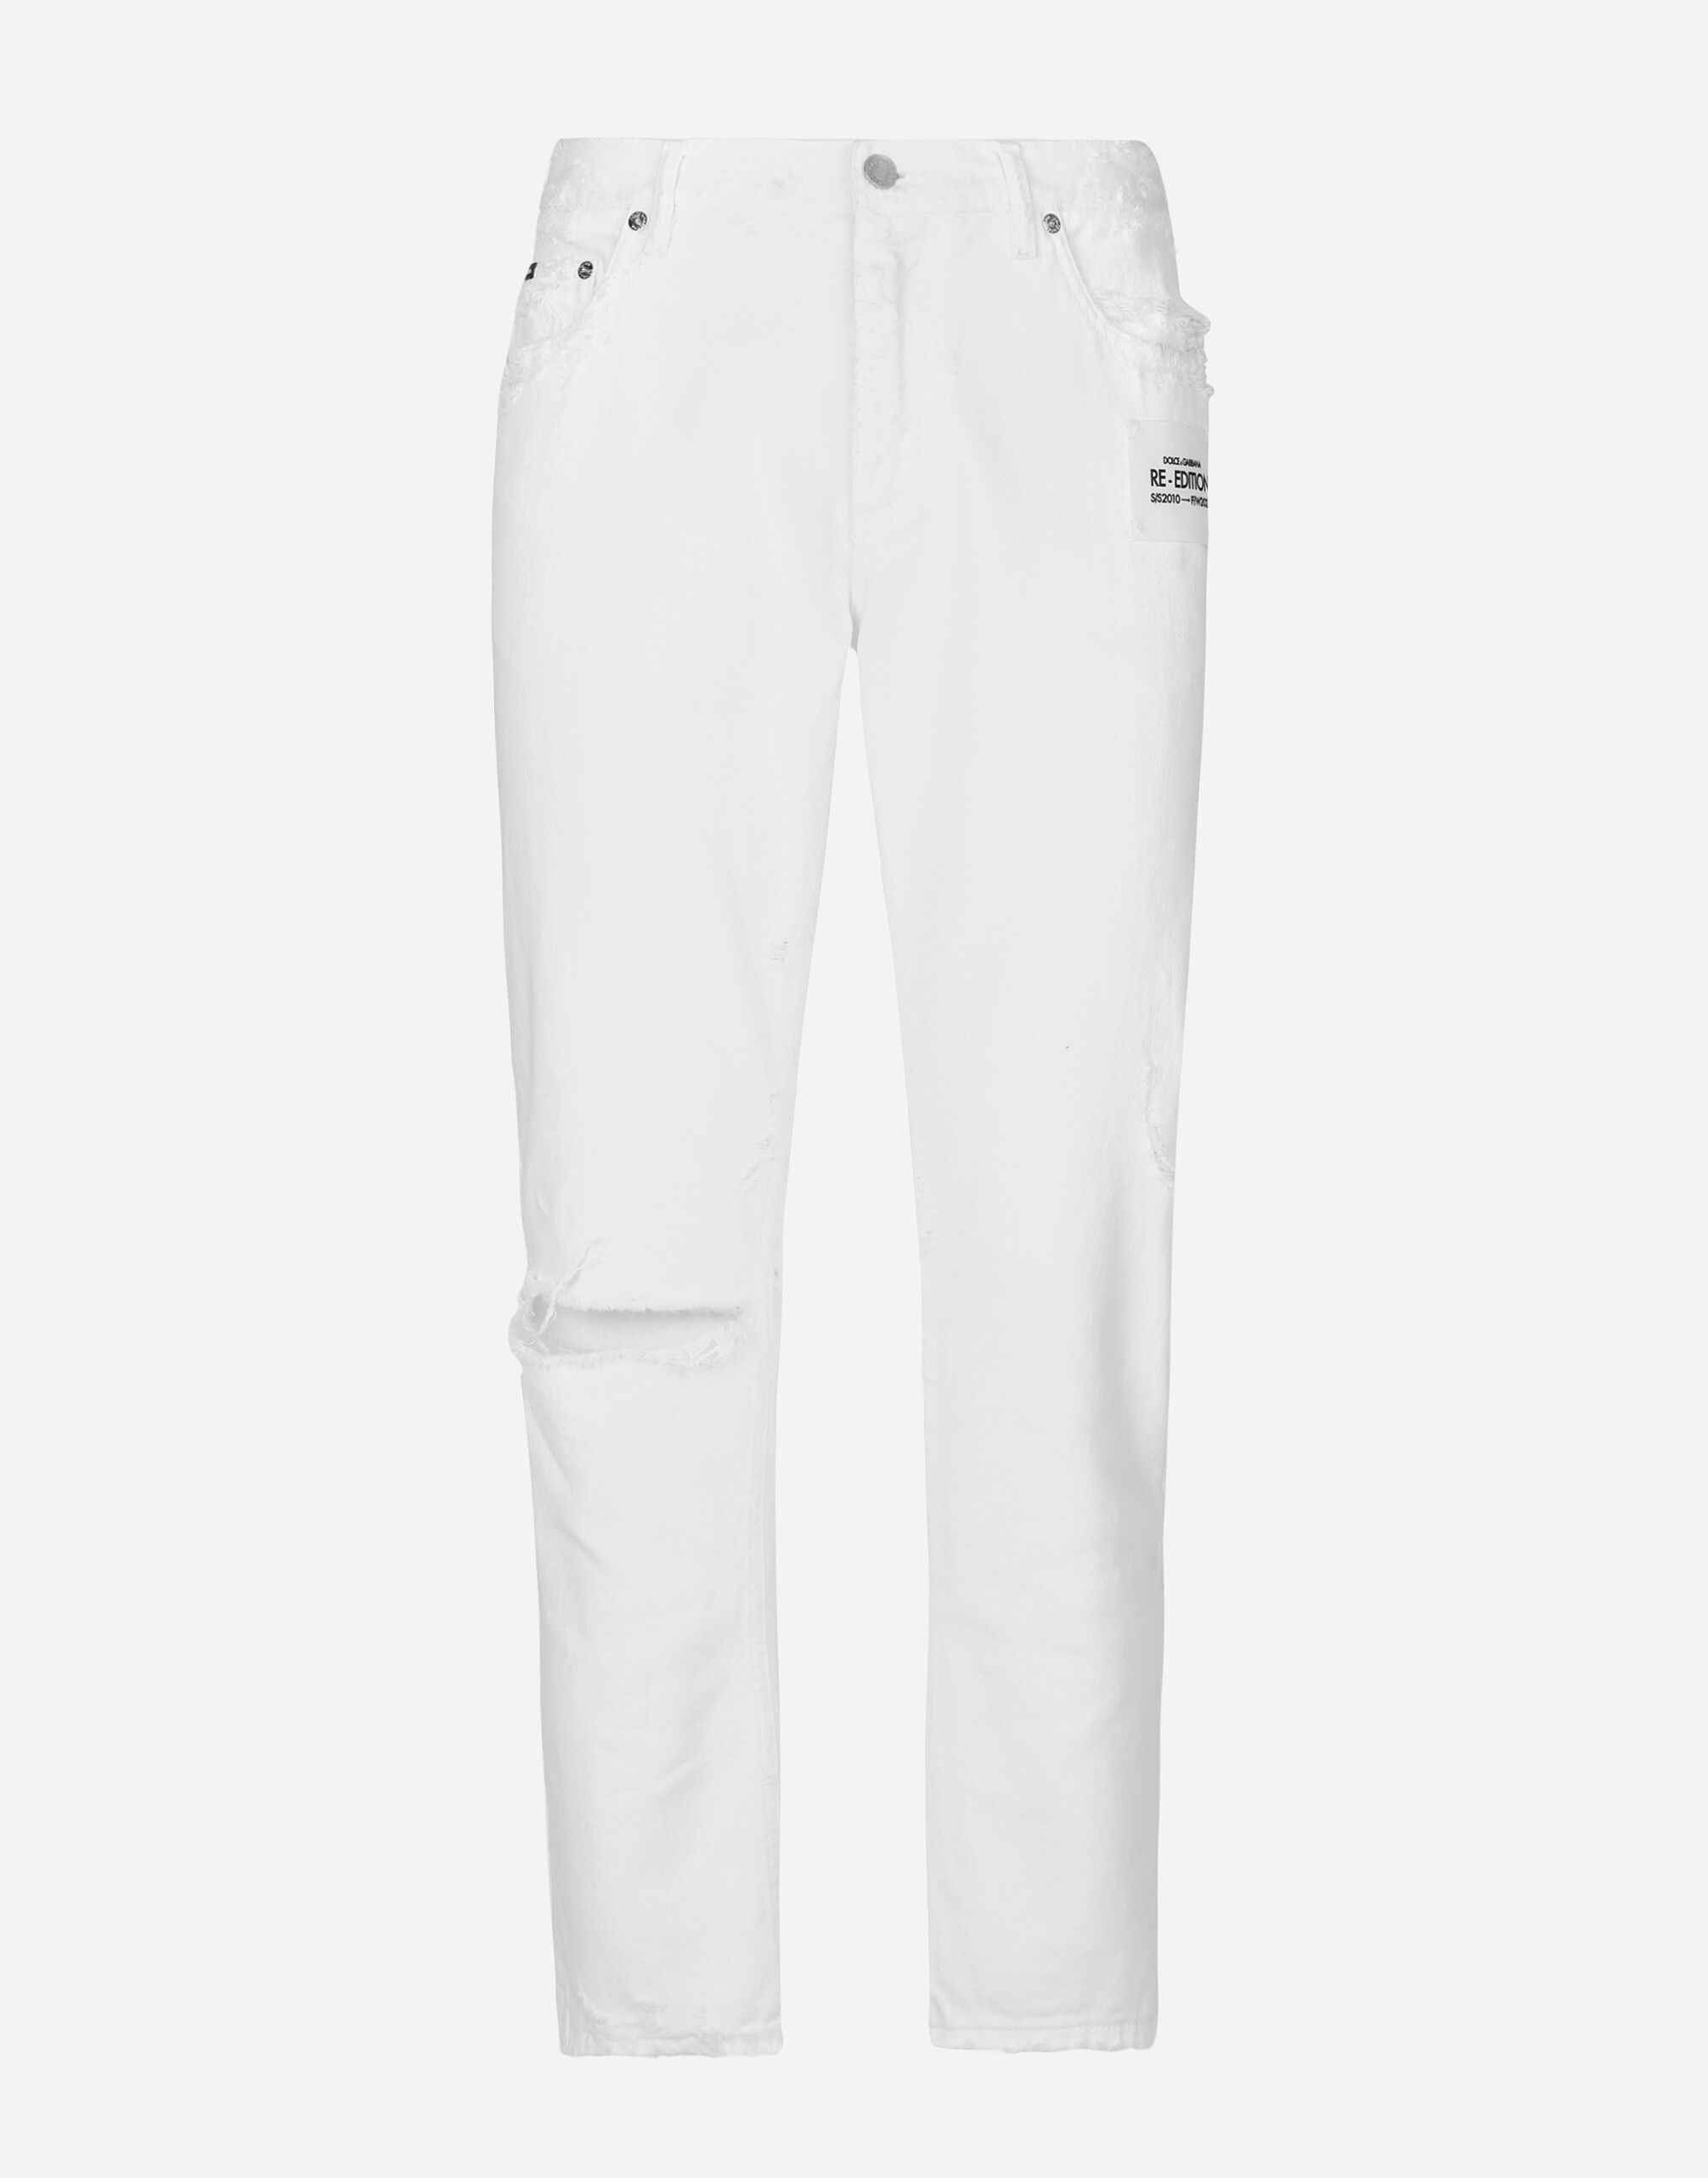 Dolce & Gabbana Jeans loose bianco con e rotture e abrasioni Multicolore G9NL5DG8GW9